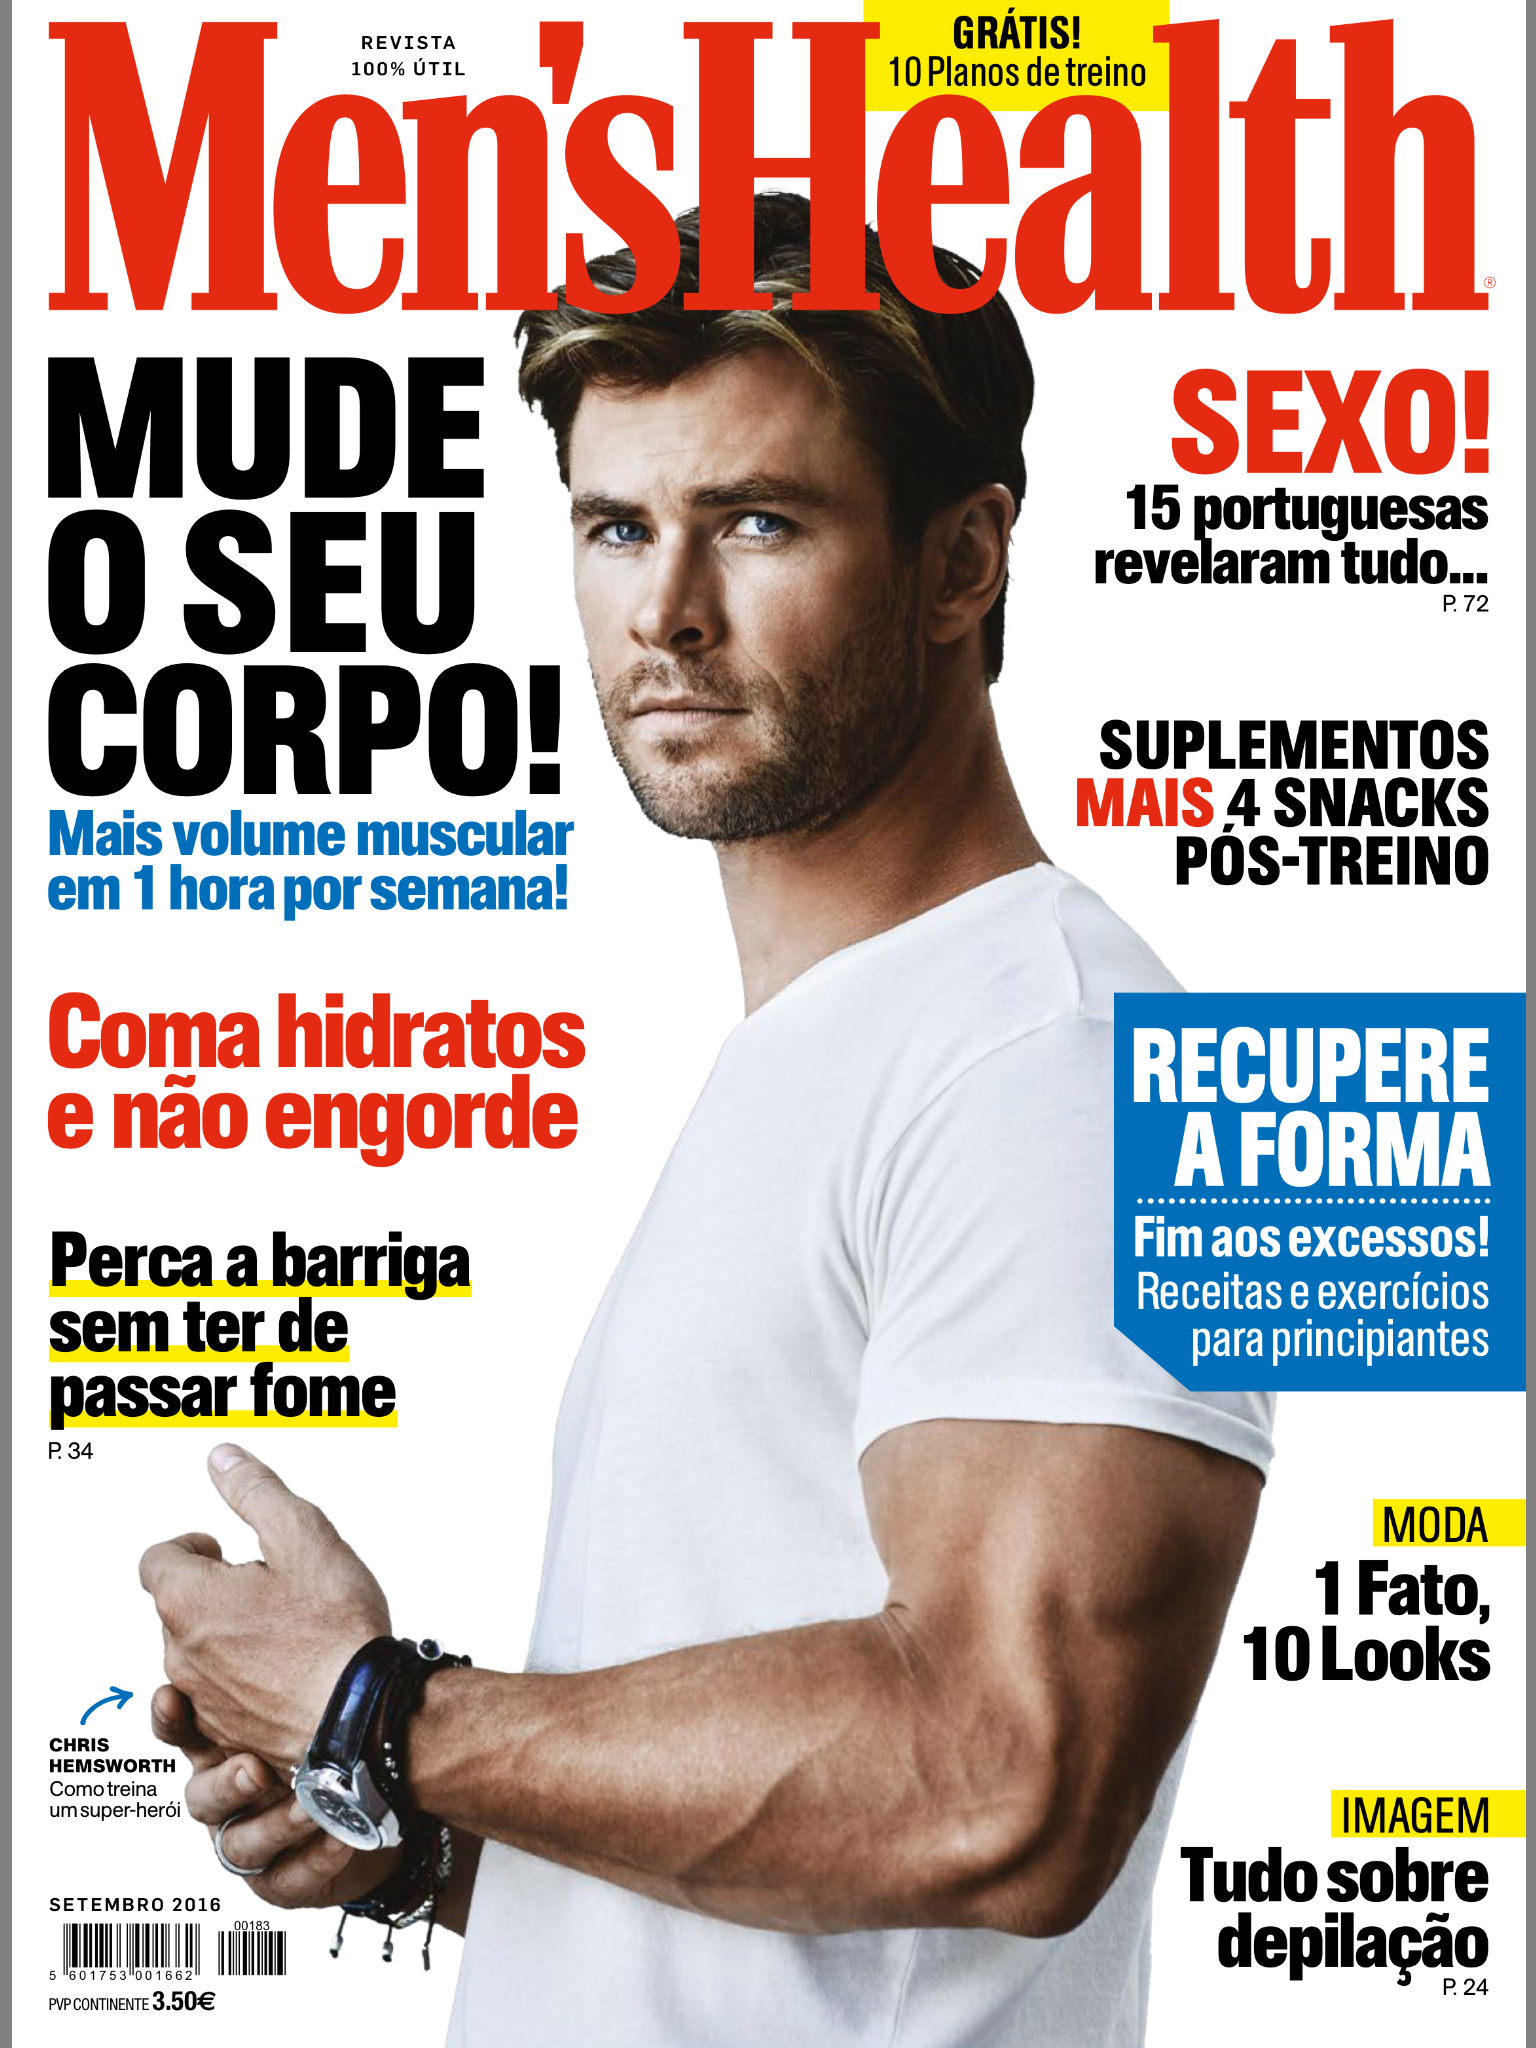 Men's Health Portugal Cover September 2016